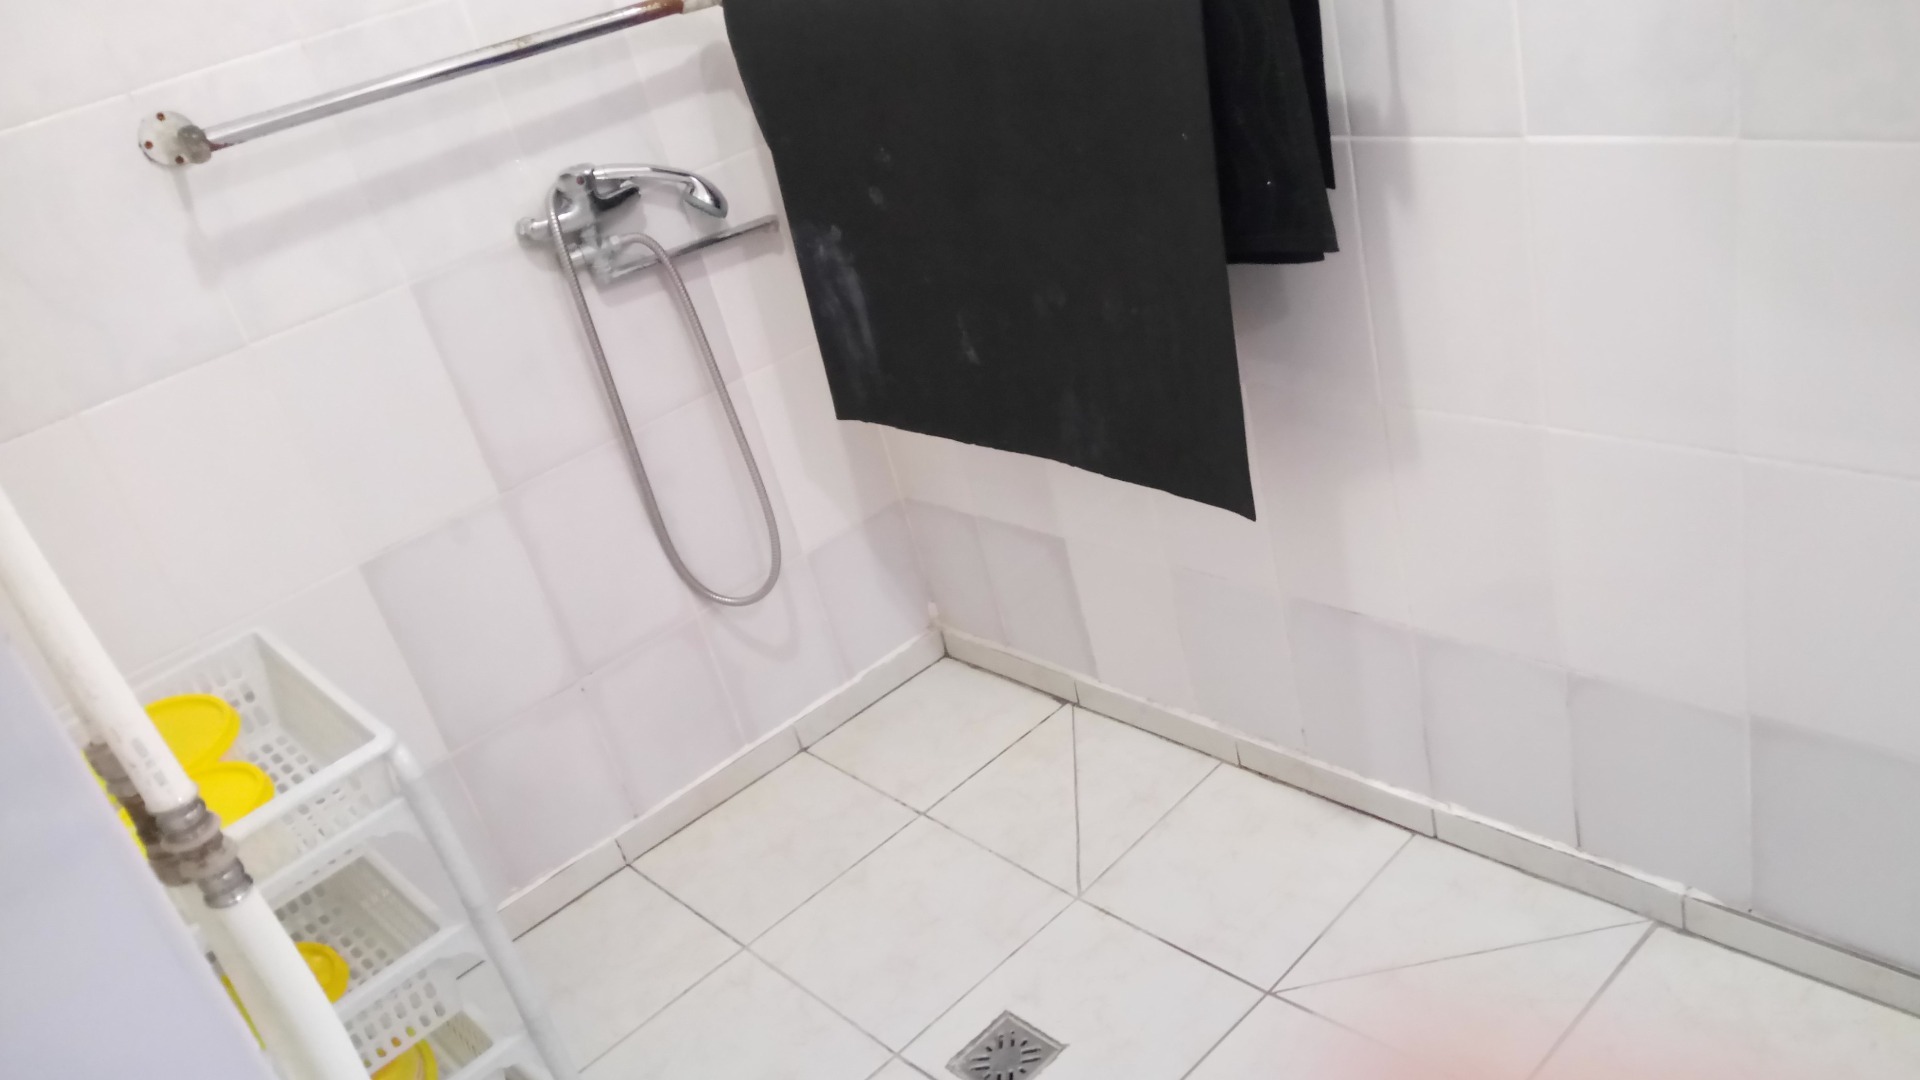 Горячий душ как оружие: приговор по необычному делу вынес суд в Каракулино